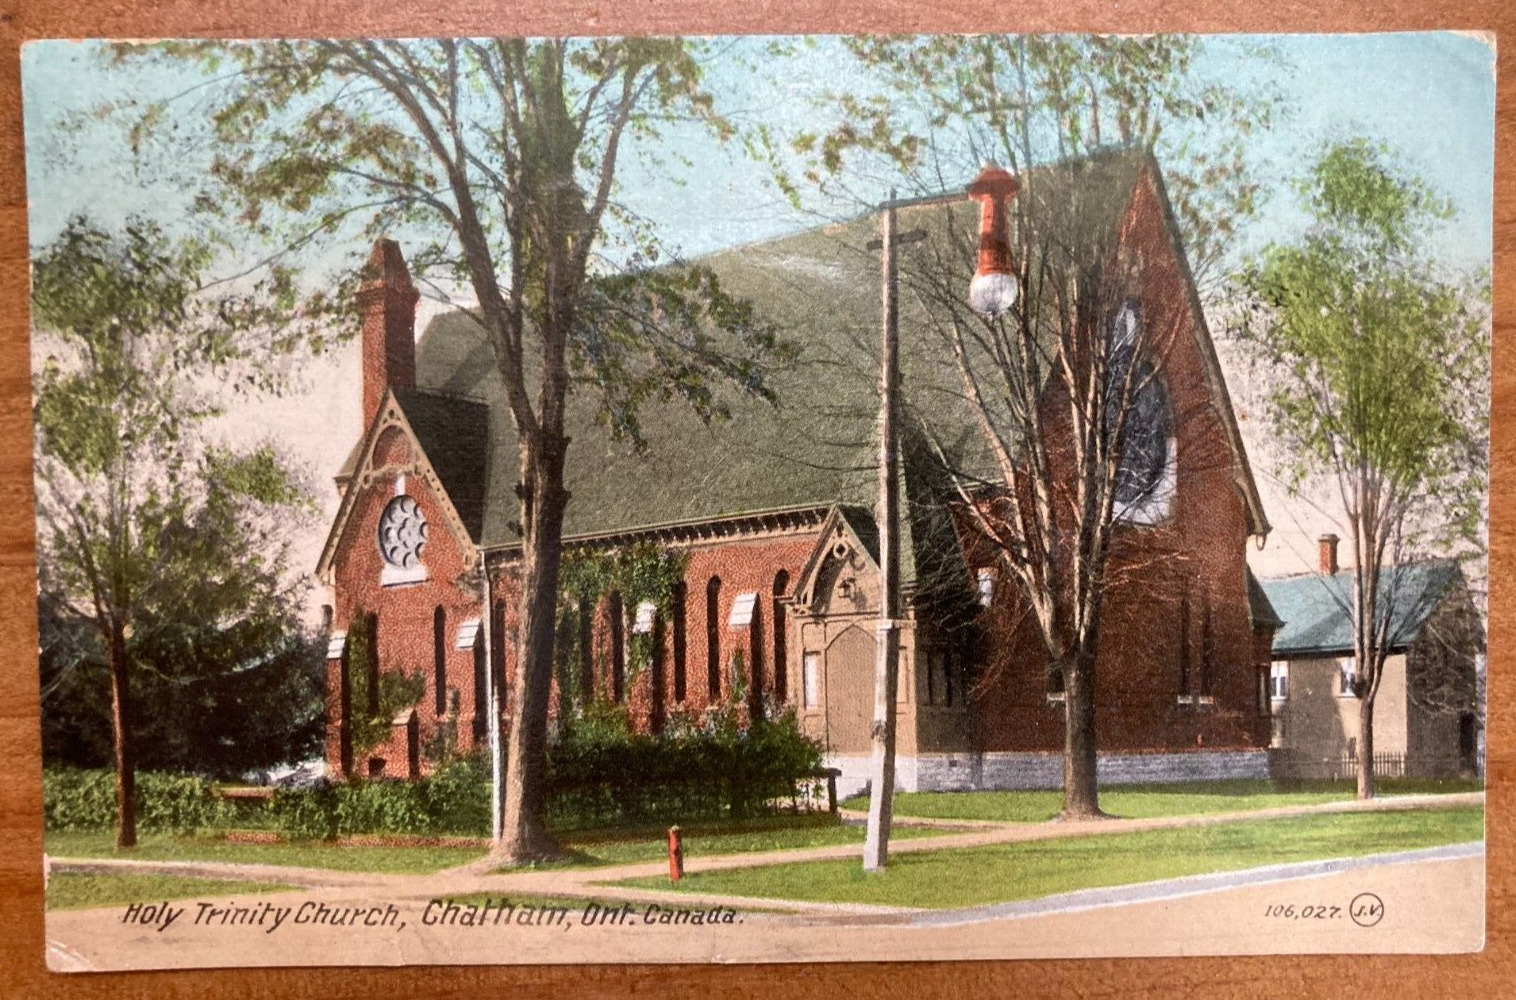 Vintage Holy Trinity Church Postcard 106,027. J.V. Valentine & Sons Publishing